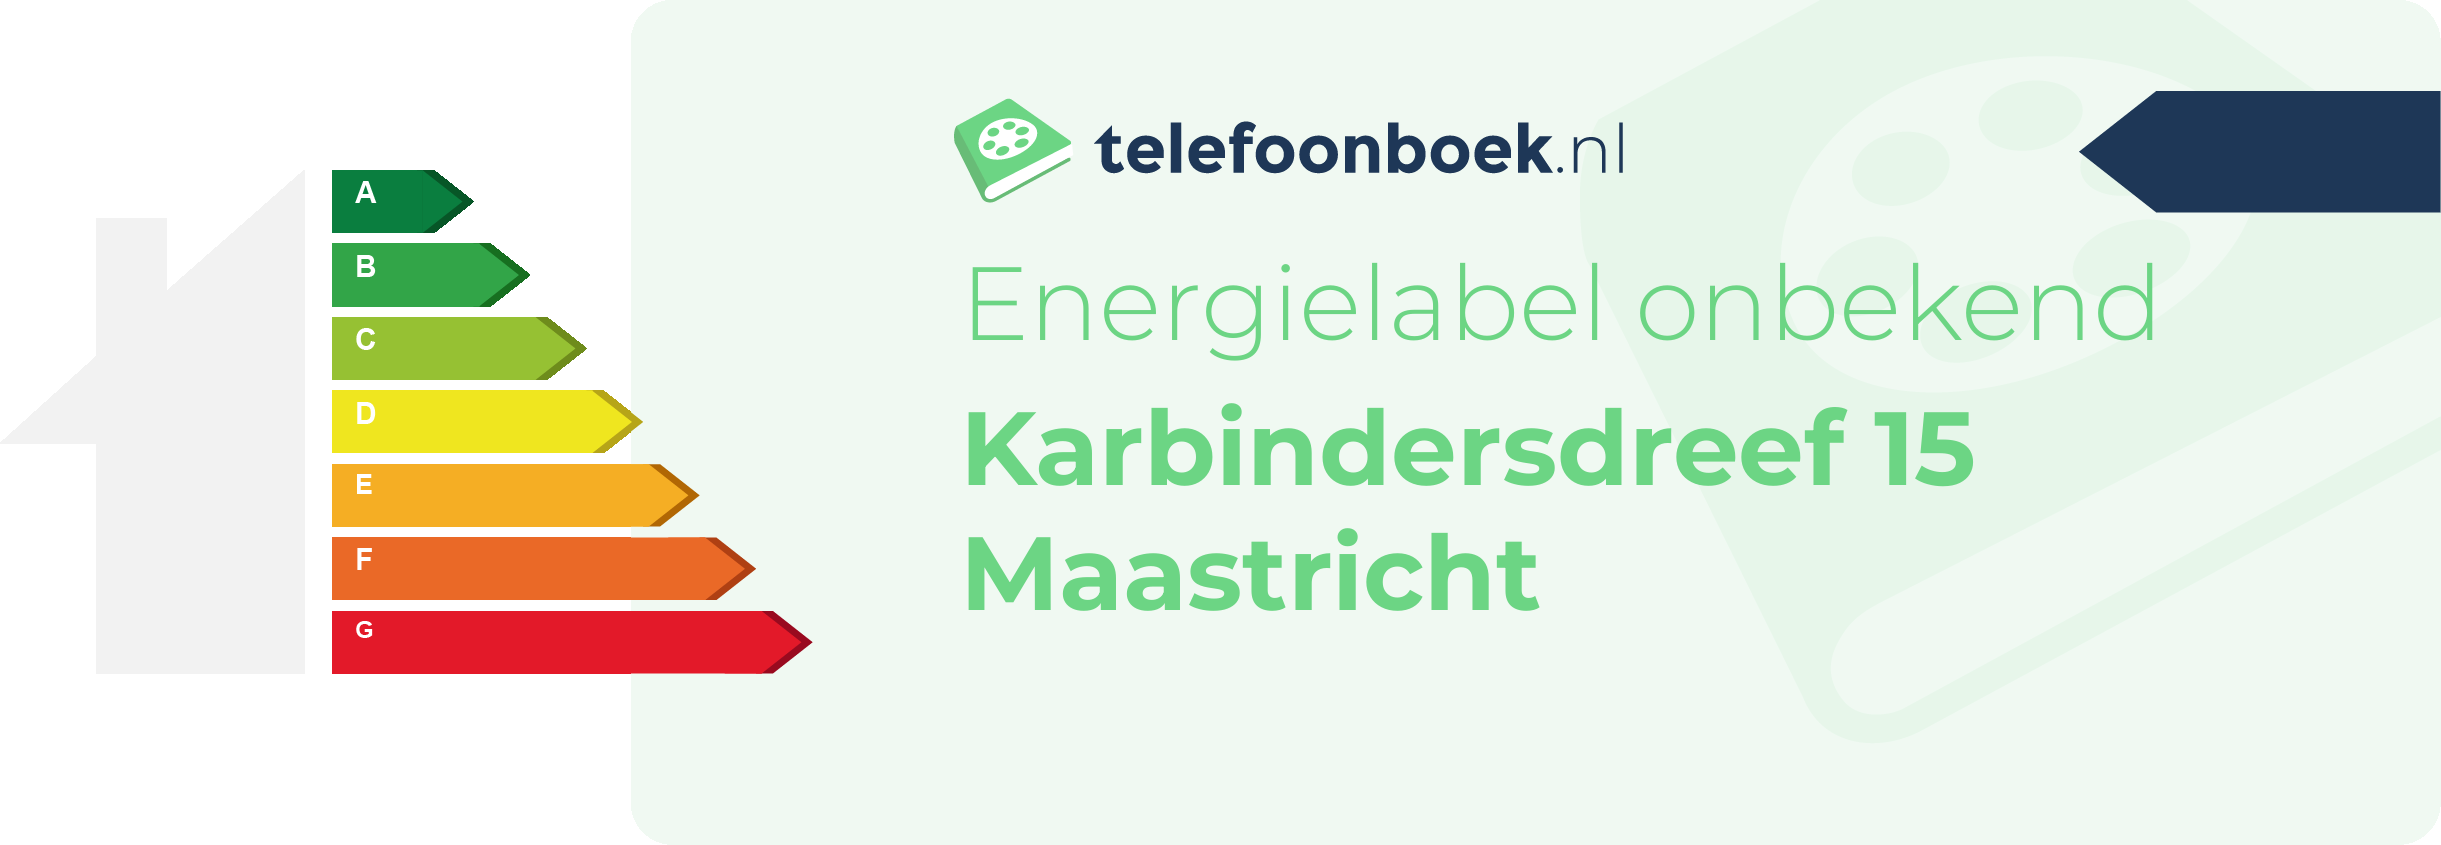 Energielabel Karbindersdreef 15 Maastricht